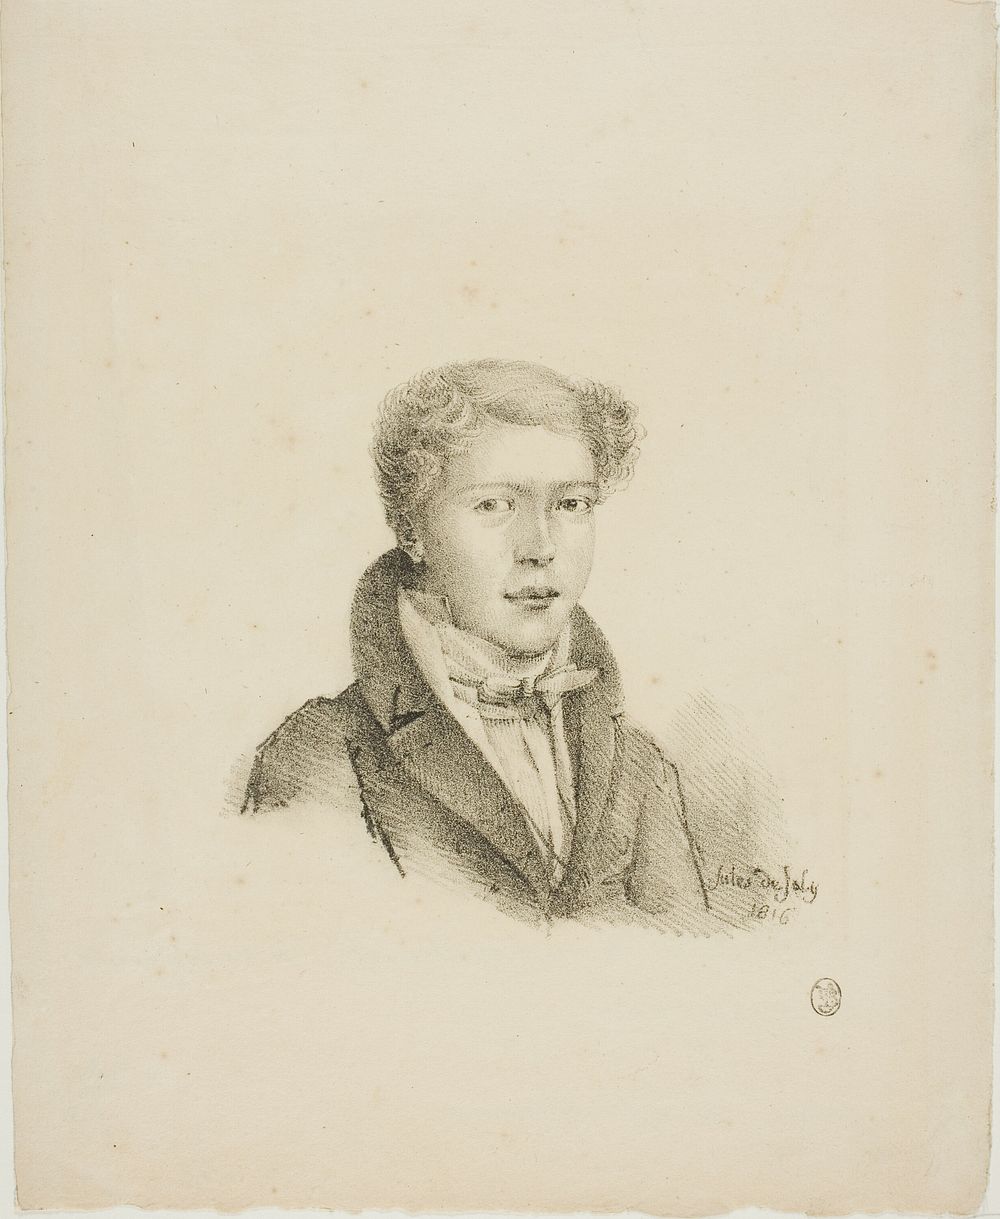 Portrait of a Young Man by Jules de Joly